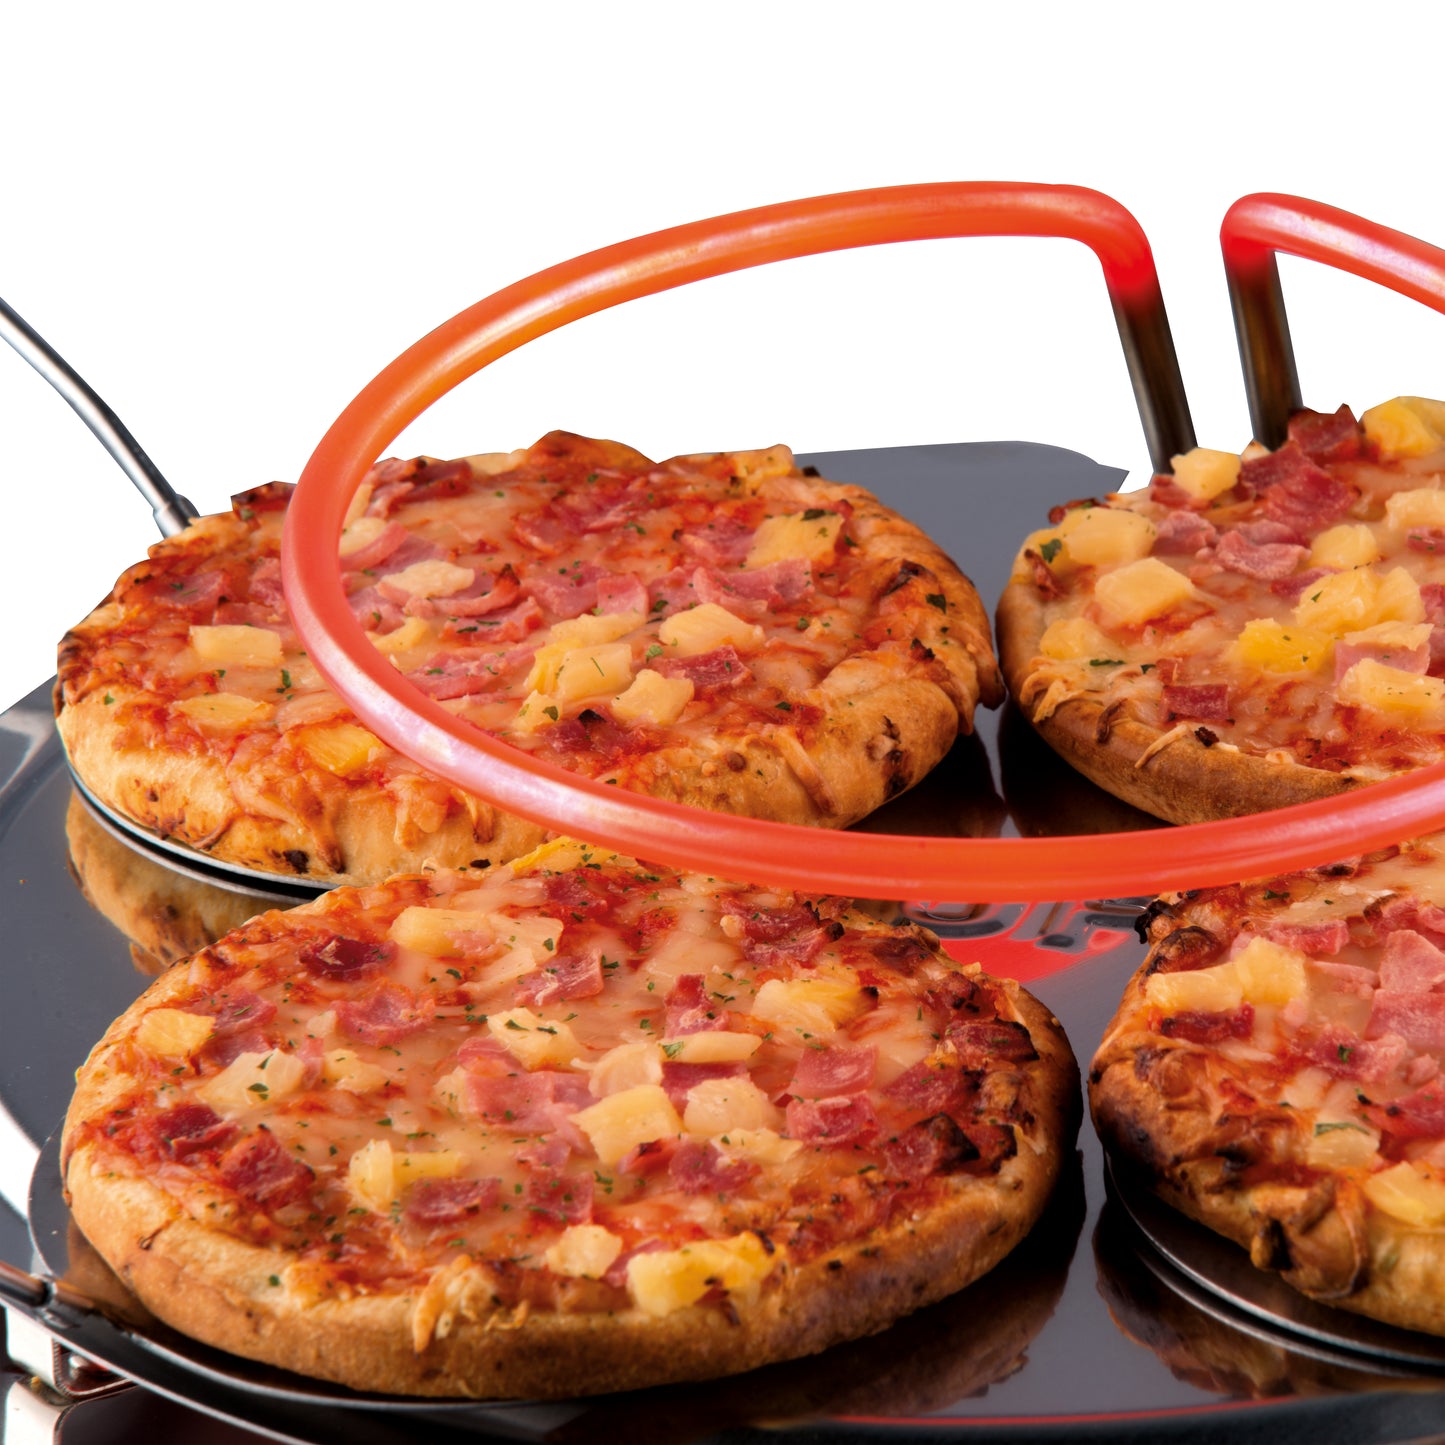 Gastronoma 18310016 - Pizza oven voor 4 personen - Inclusief bakspatels, bakplaat en pizzavorm - Keramiek/Grijs